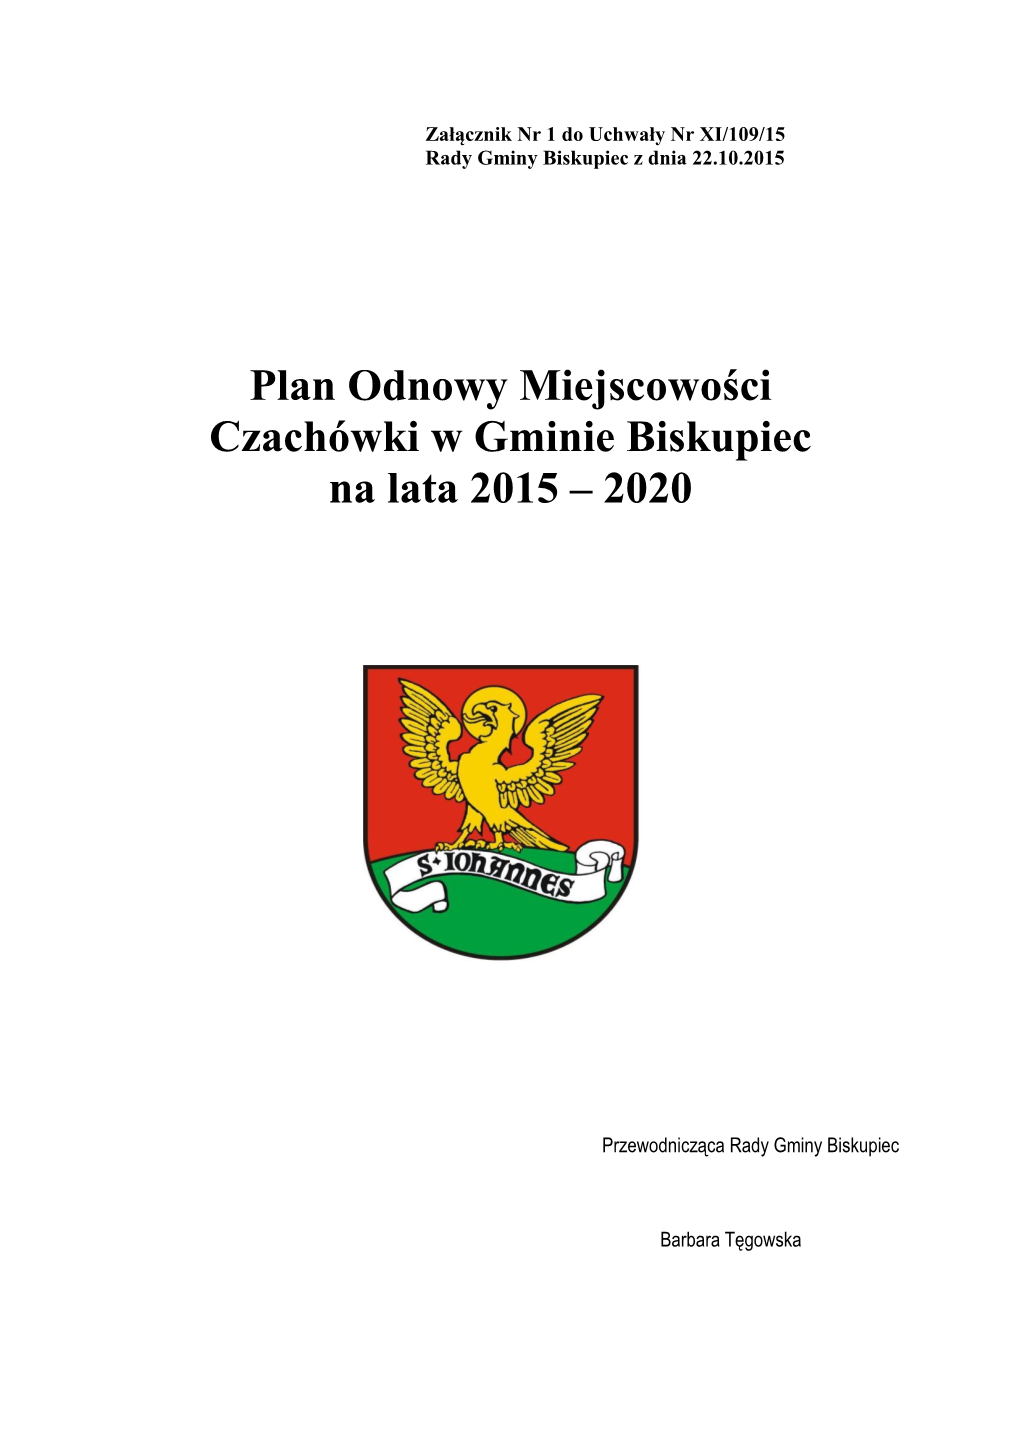 Plan Odnowy Miejscowości Czachówki W Gminie Biskupiec Na Lata 2015 – 2020